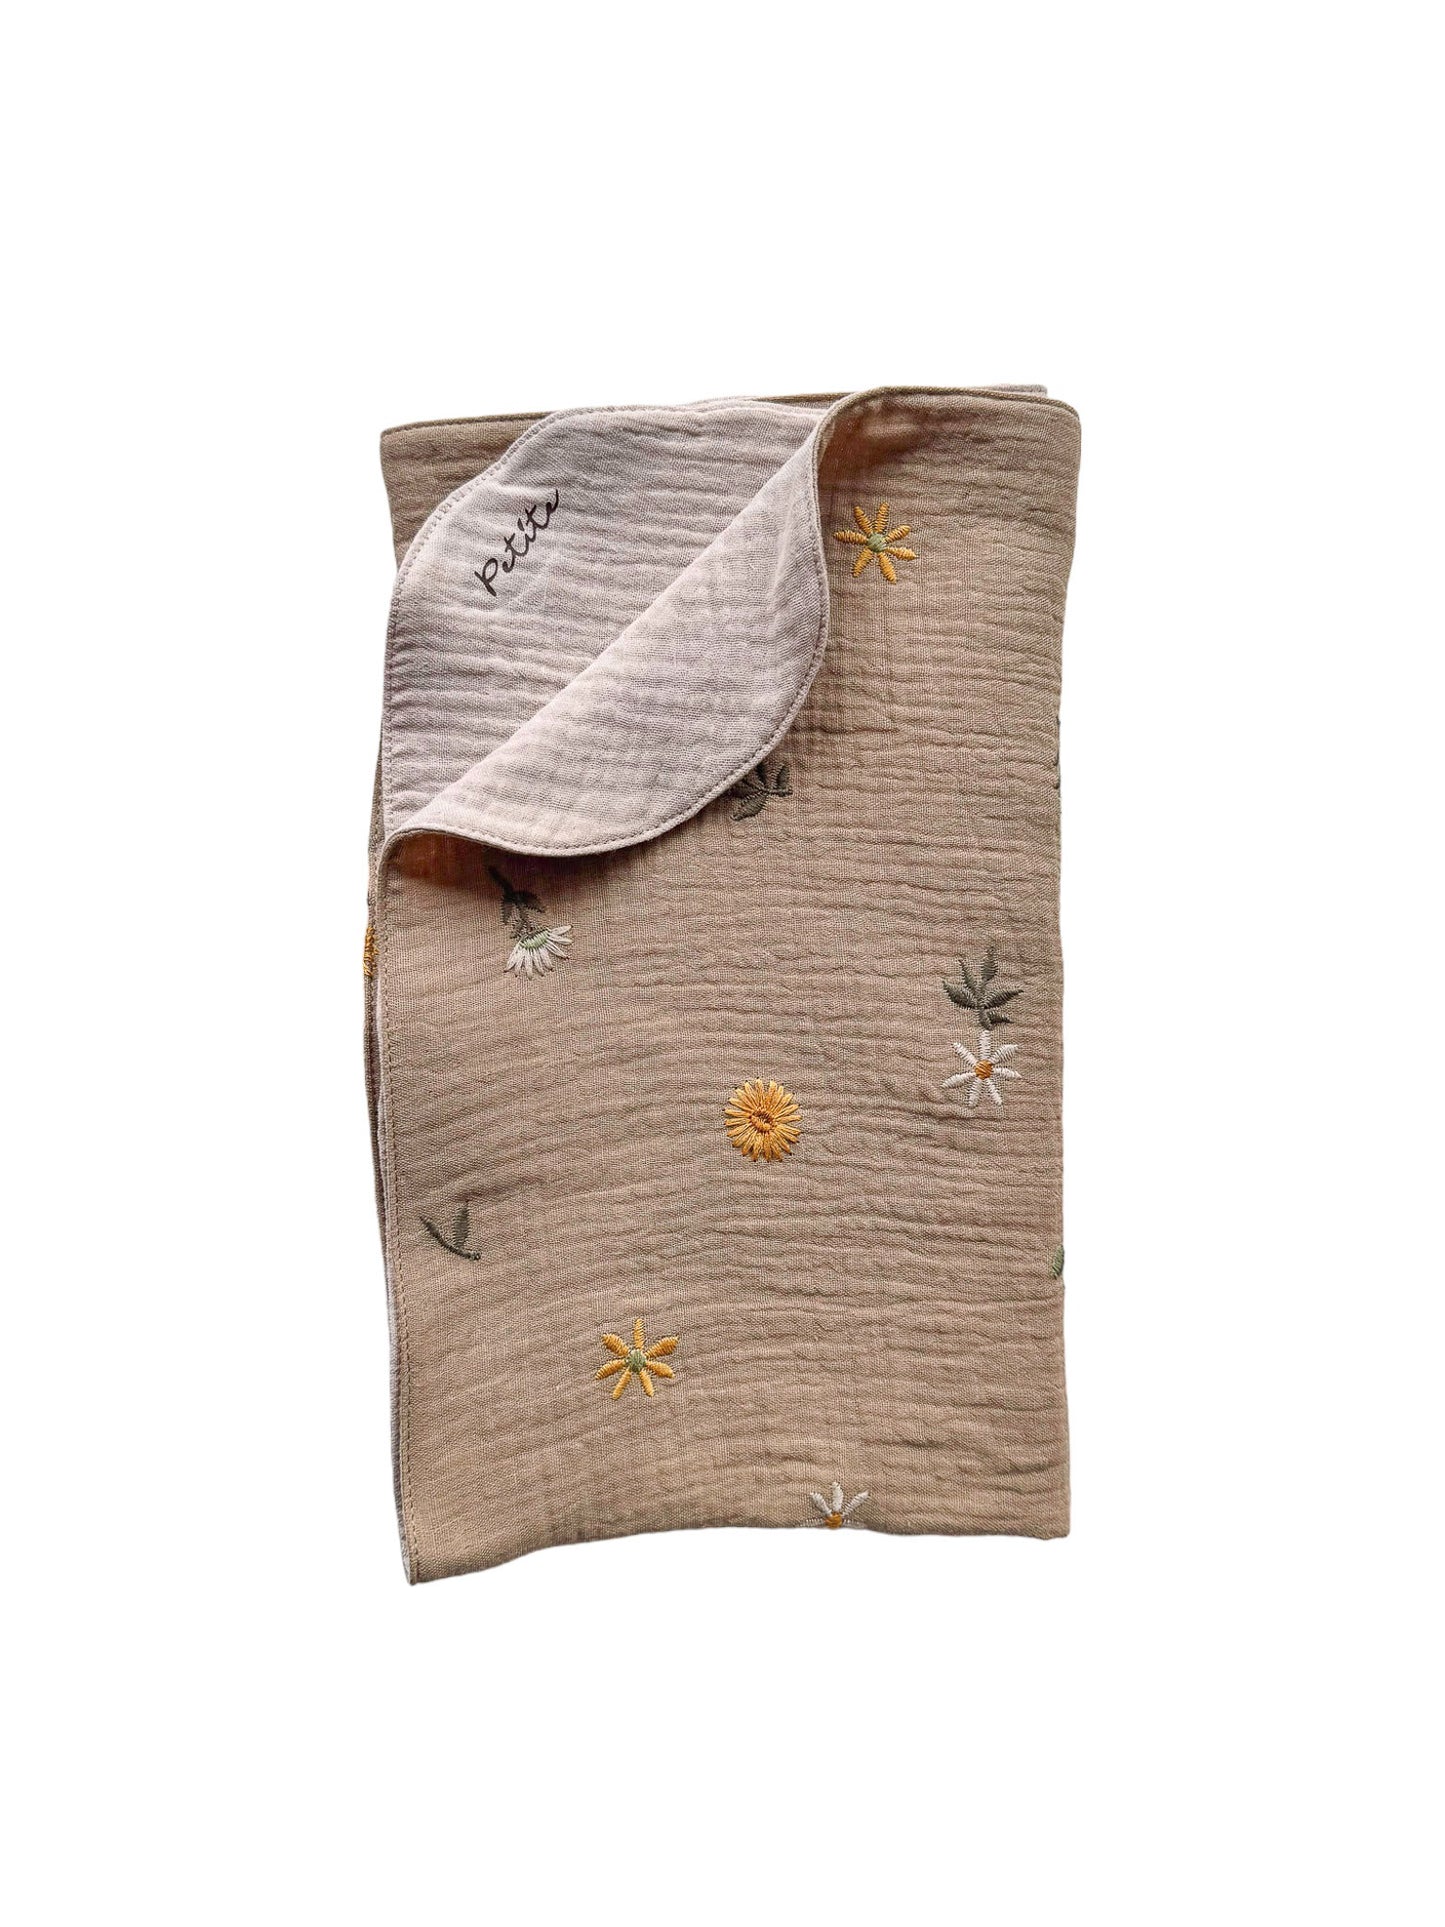 Baby blanket / embroidered spring floral - beige